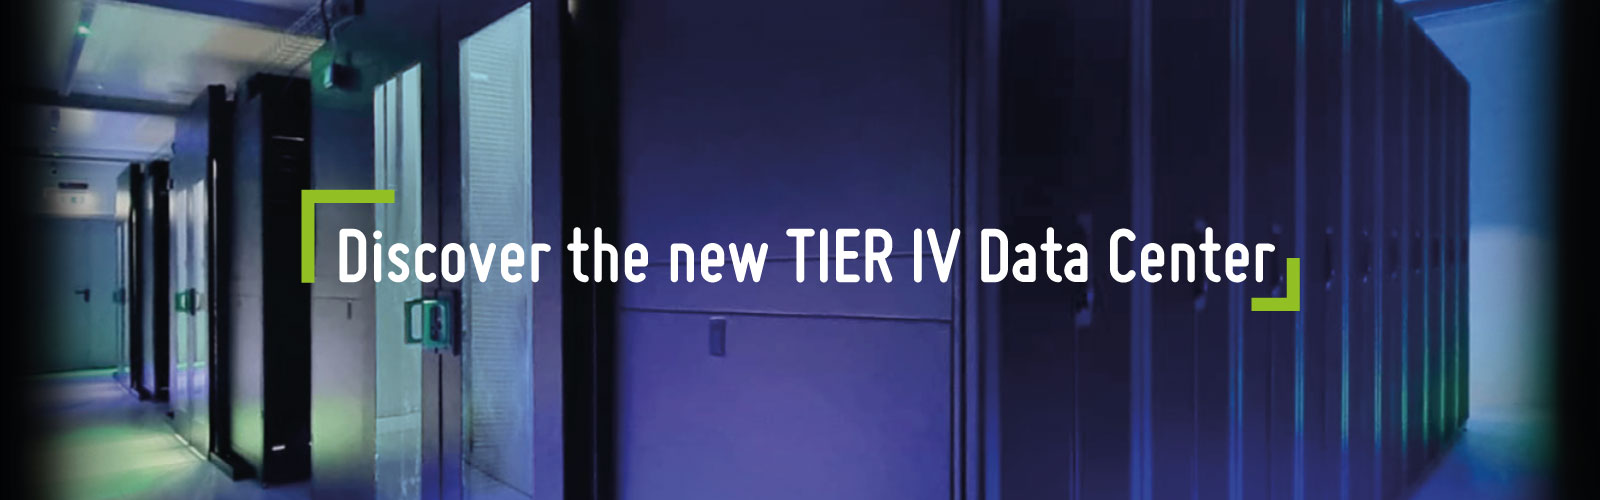 New TIER IV Data Center